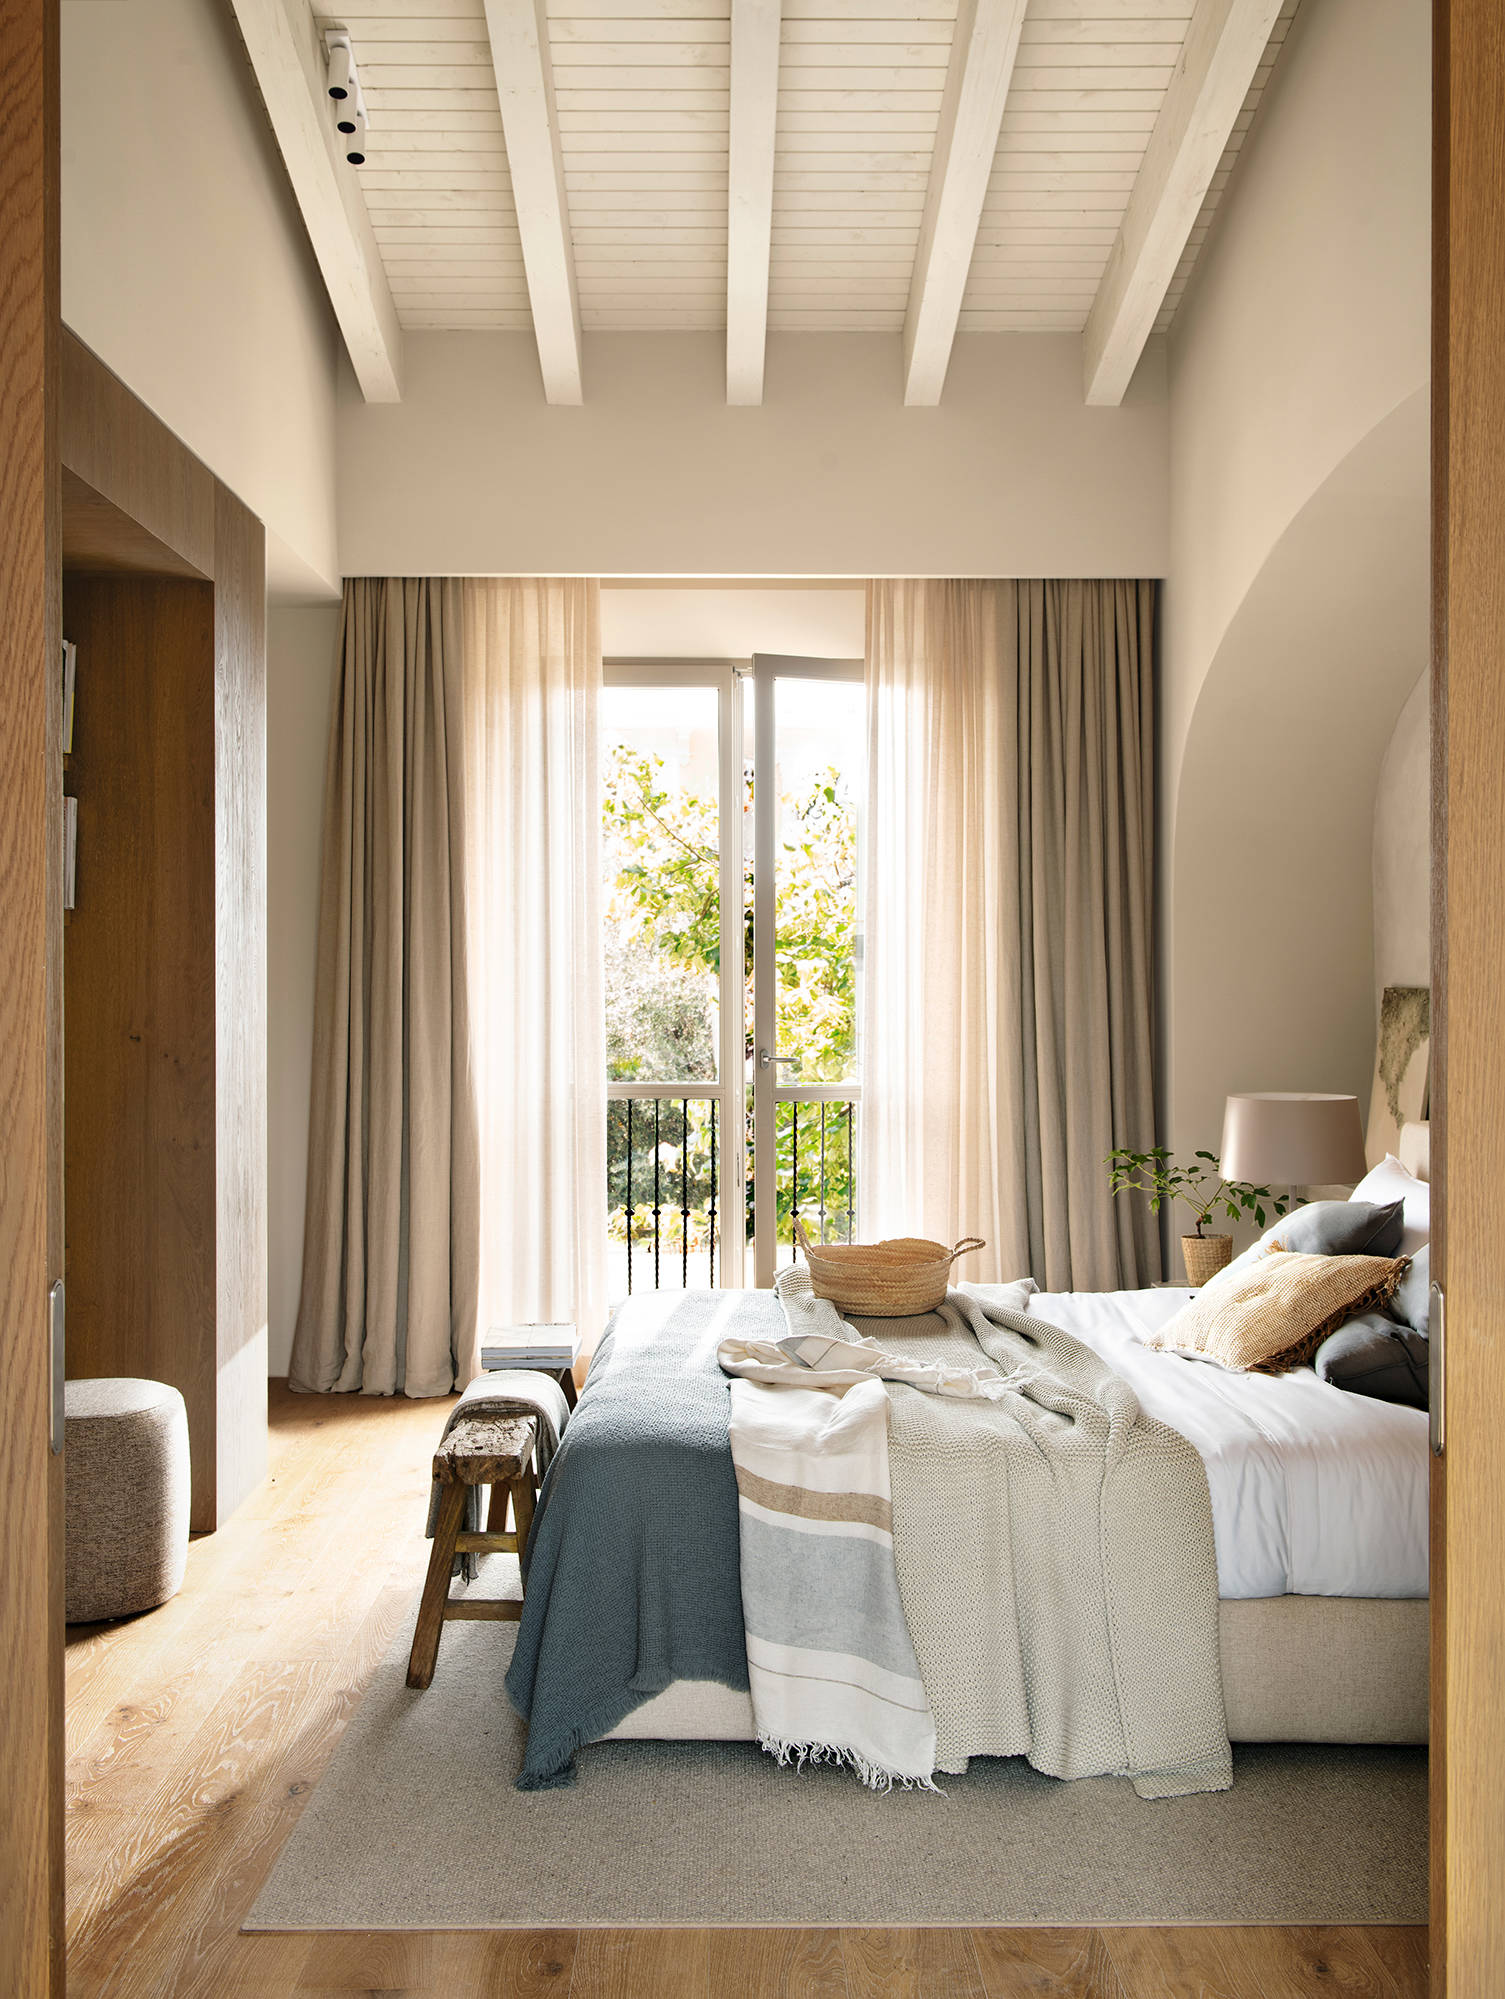 Dormitorio con techo alto inclinado y con vigas blancas